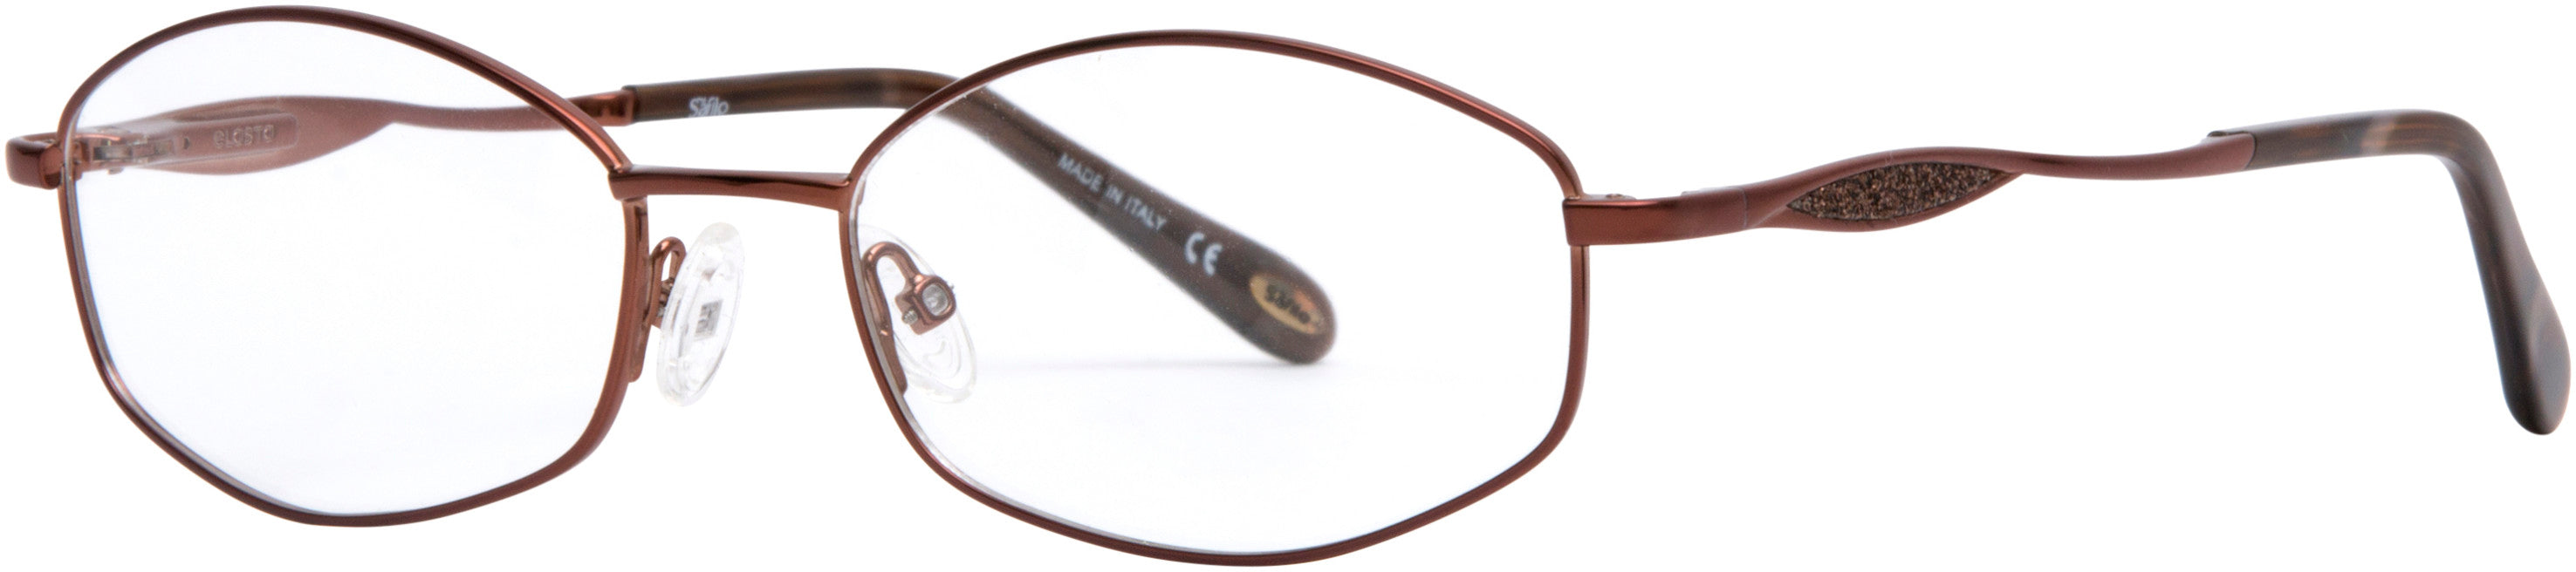  Emozioni 4383 Oval Modified Eyeglasses 009Q-009Q  Brown (00 Demo Lens)